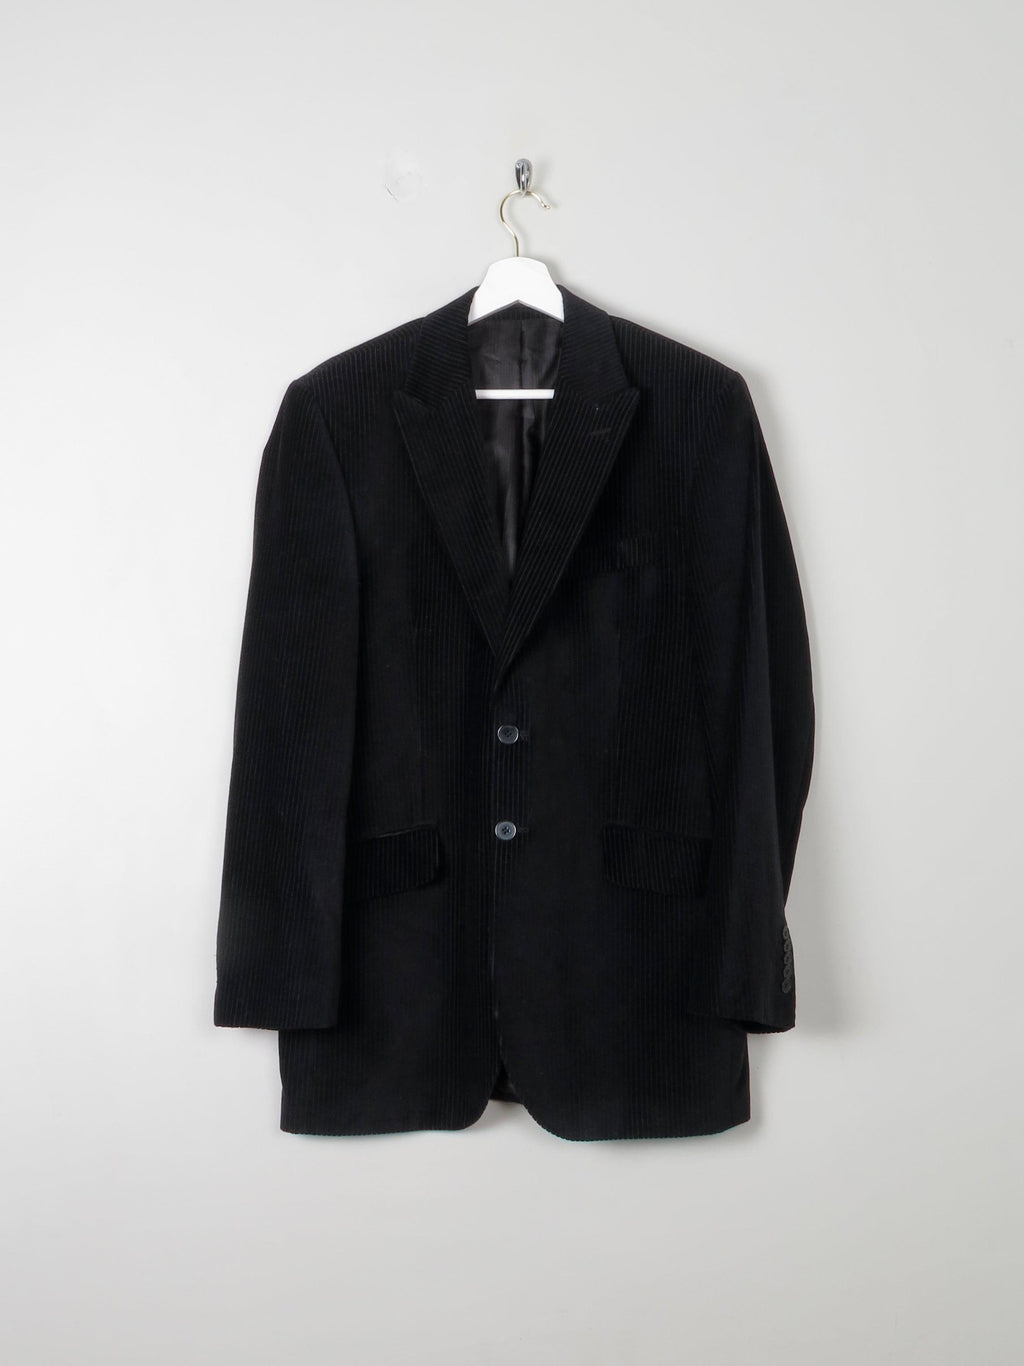 Men's Black Cord/ Velvet Tailored Jacket 38 L - The Harlequin